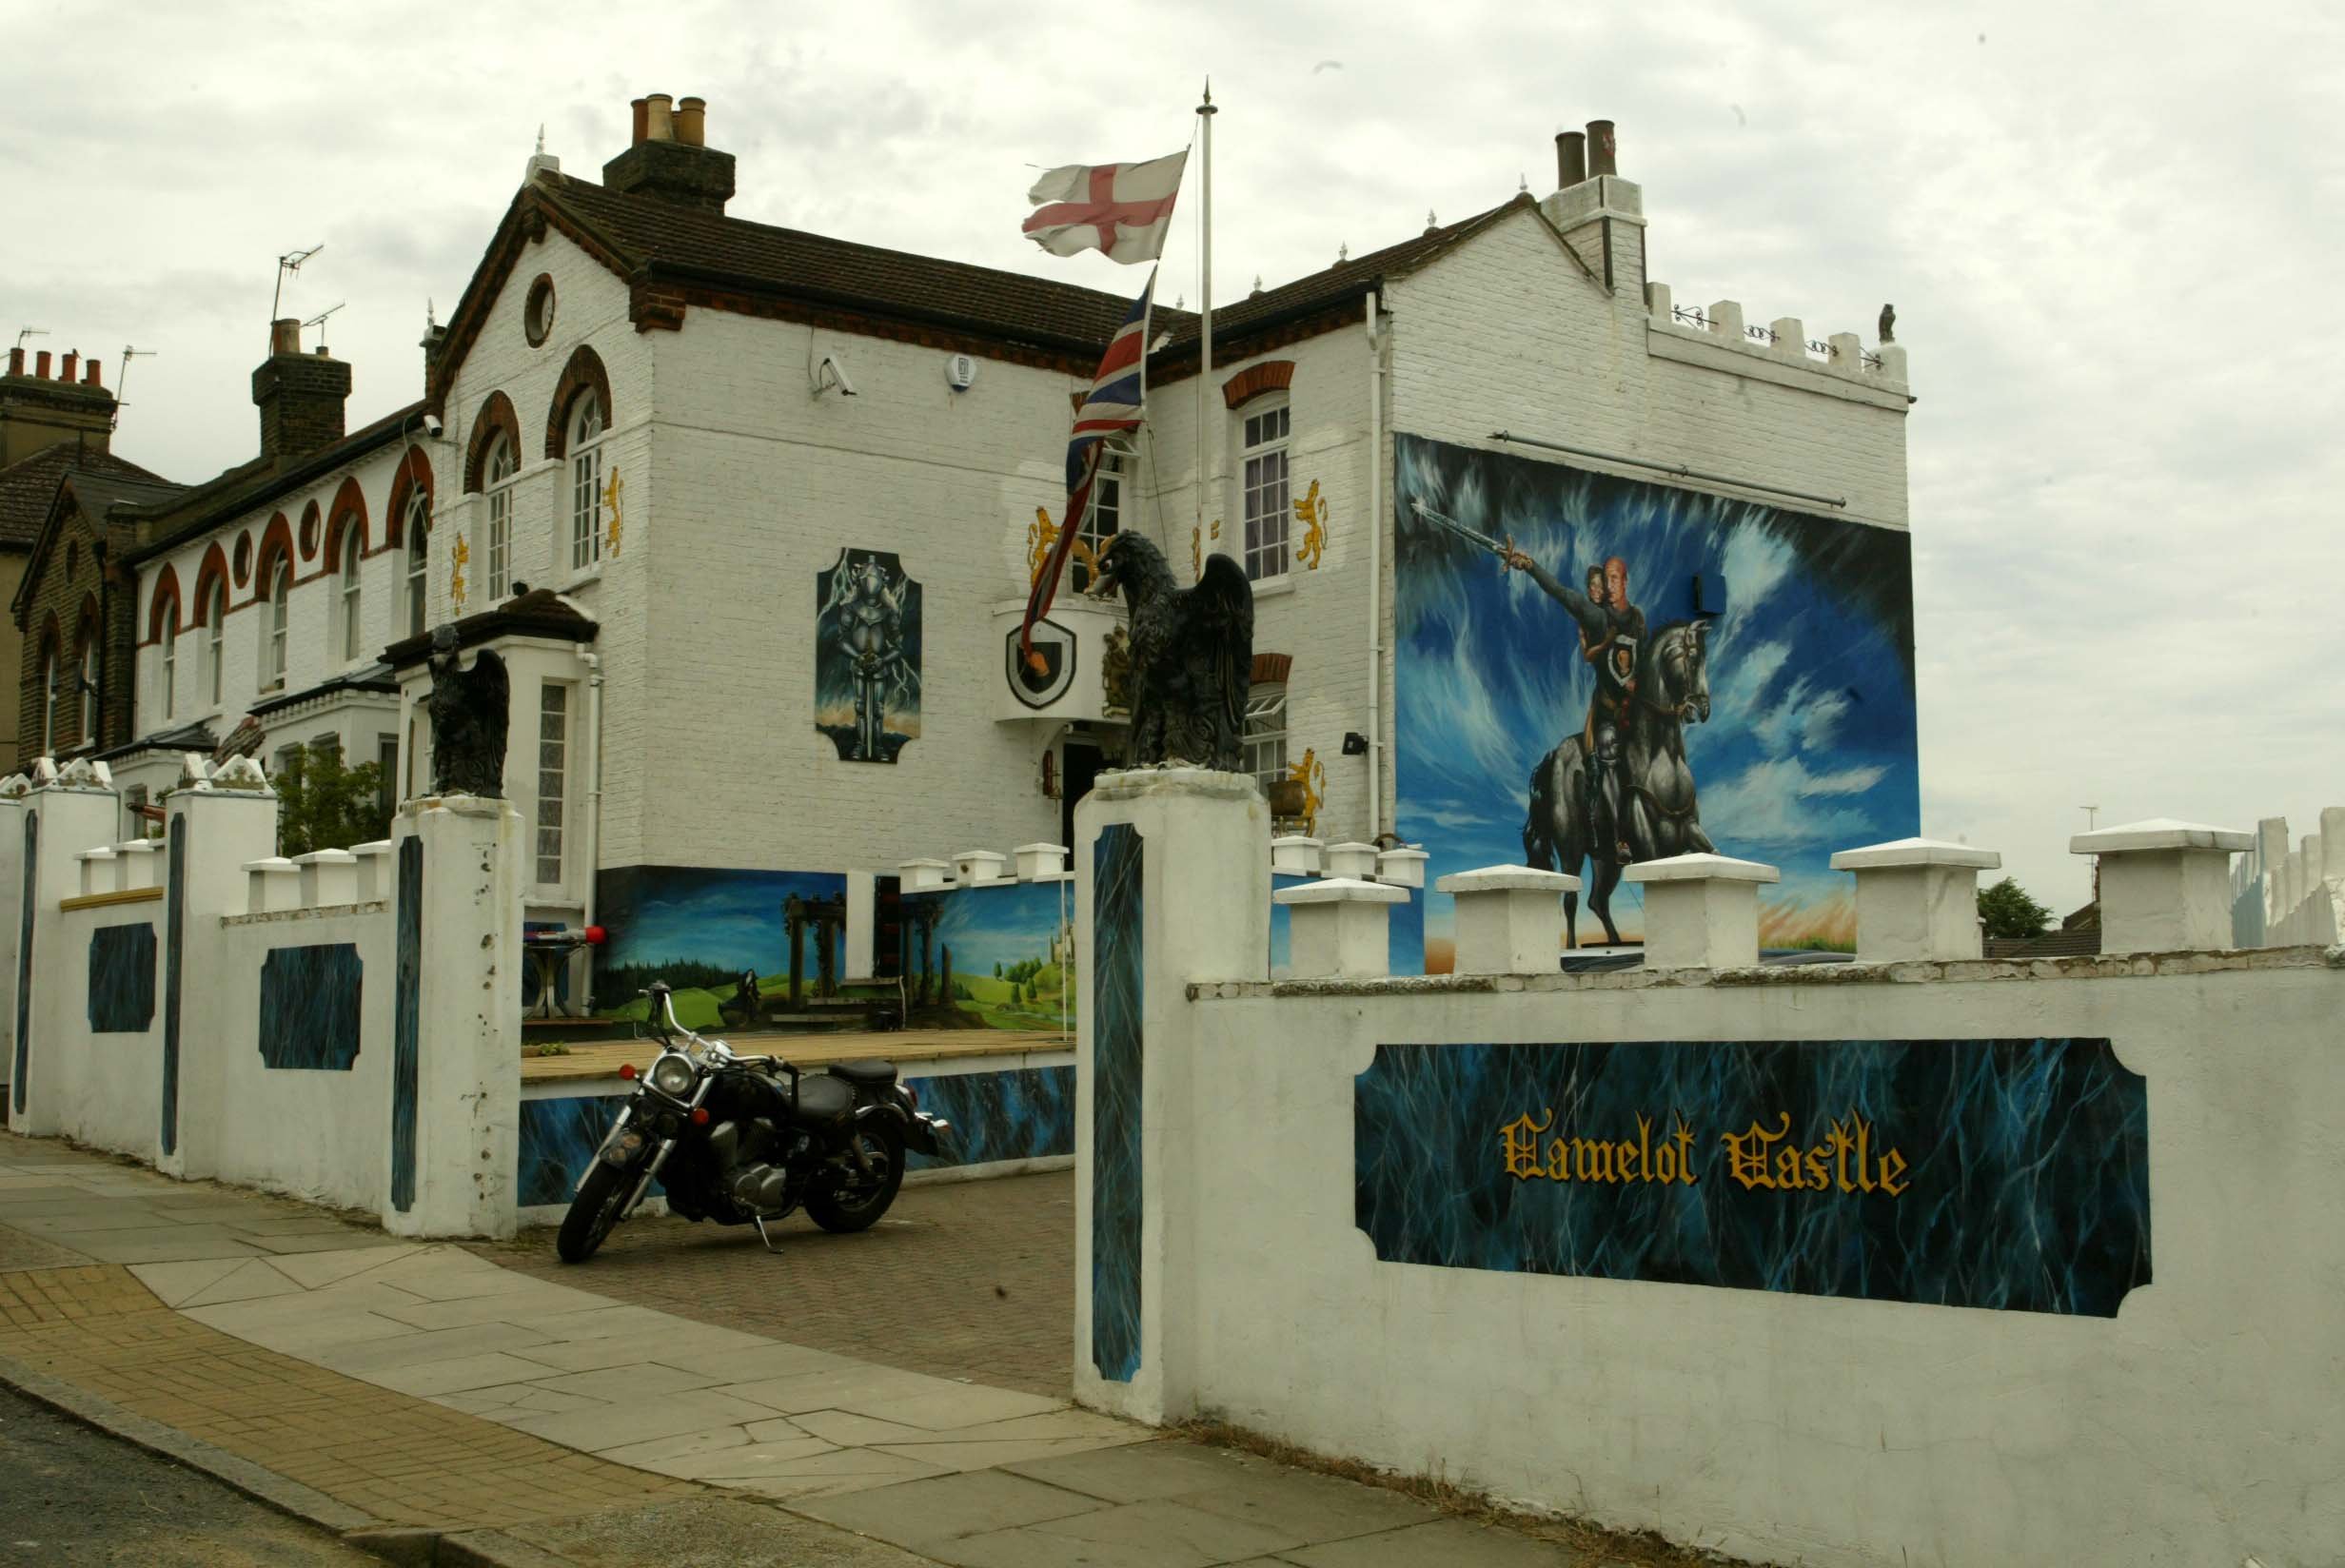 Das Haus ist mit goldenen Löwen, Union Jacks und einem Wandgemälde von Dave als Ritter auf einem Pferd geschmückt